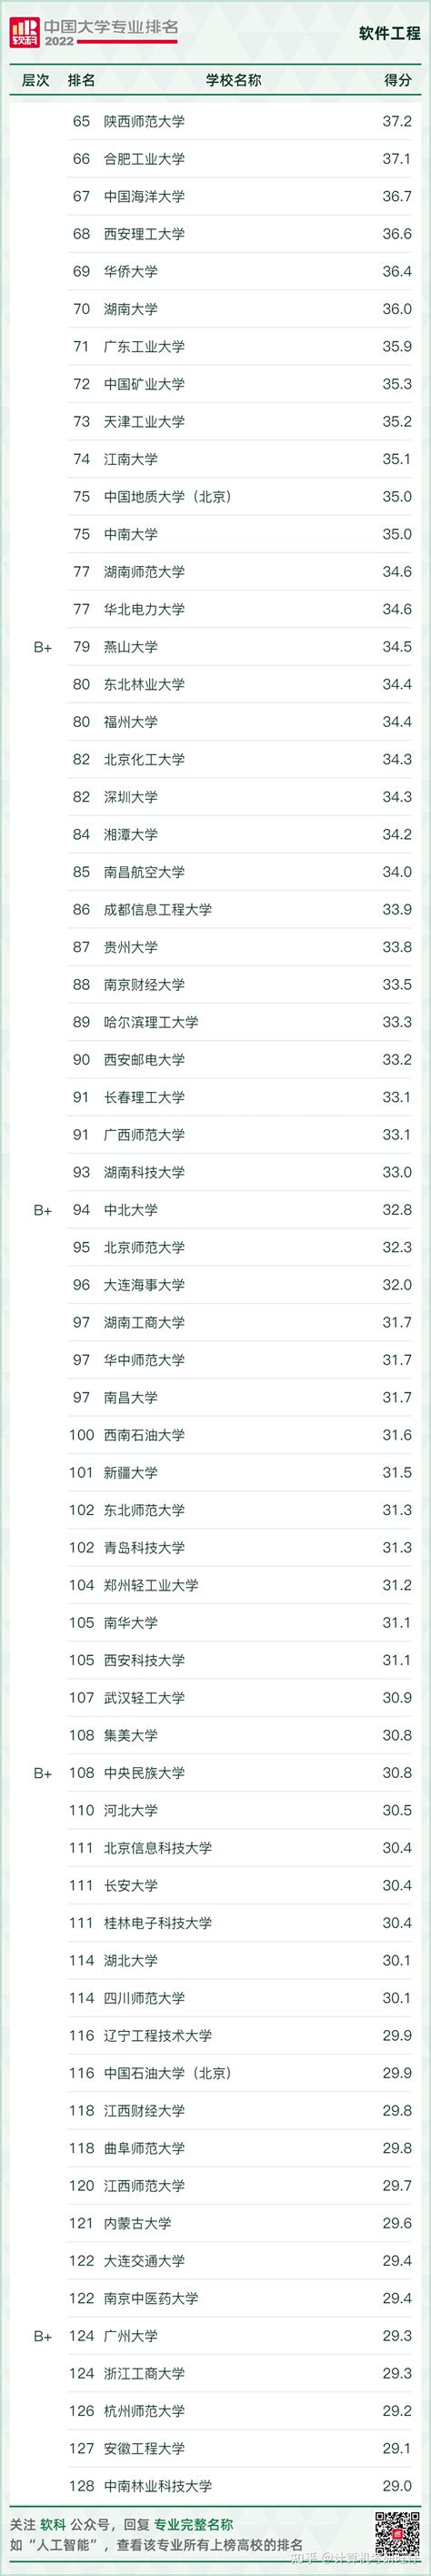 22软科中国计算机类专业院校排名-软件工程+网安专业完整排名 - 知乎